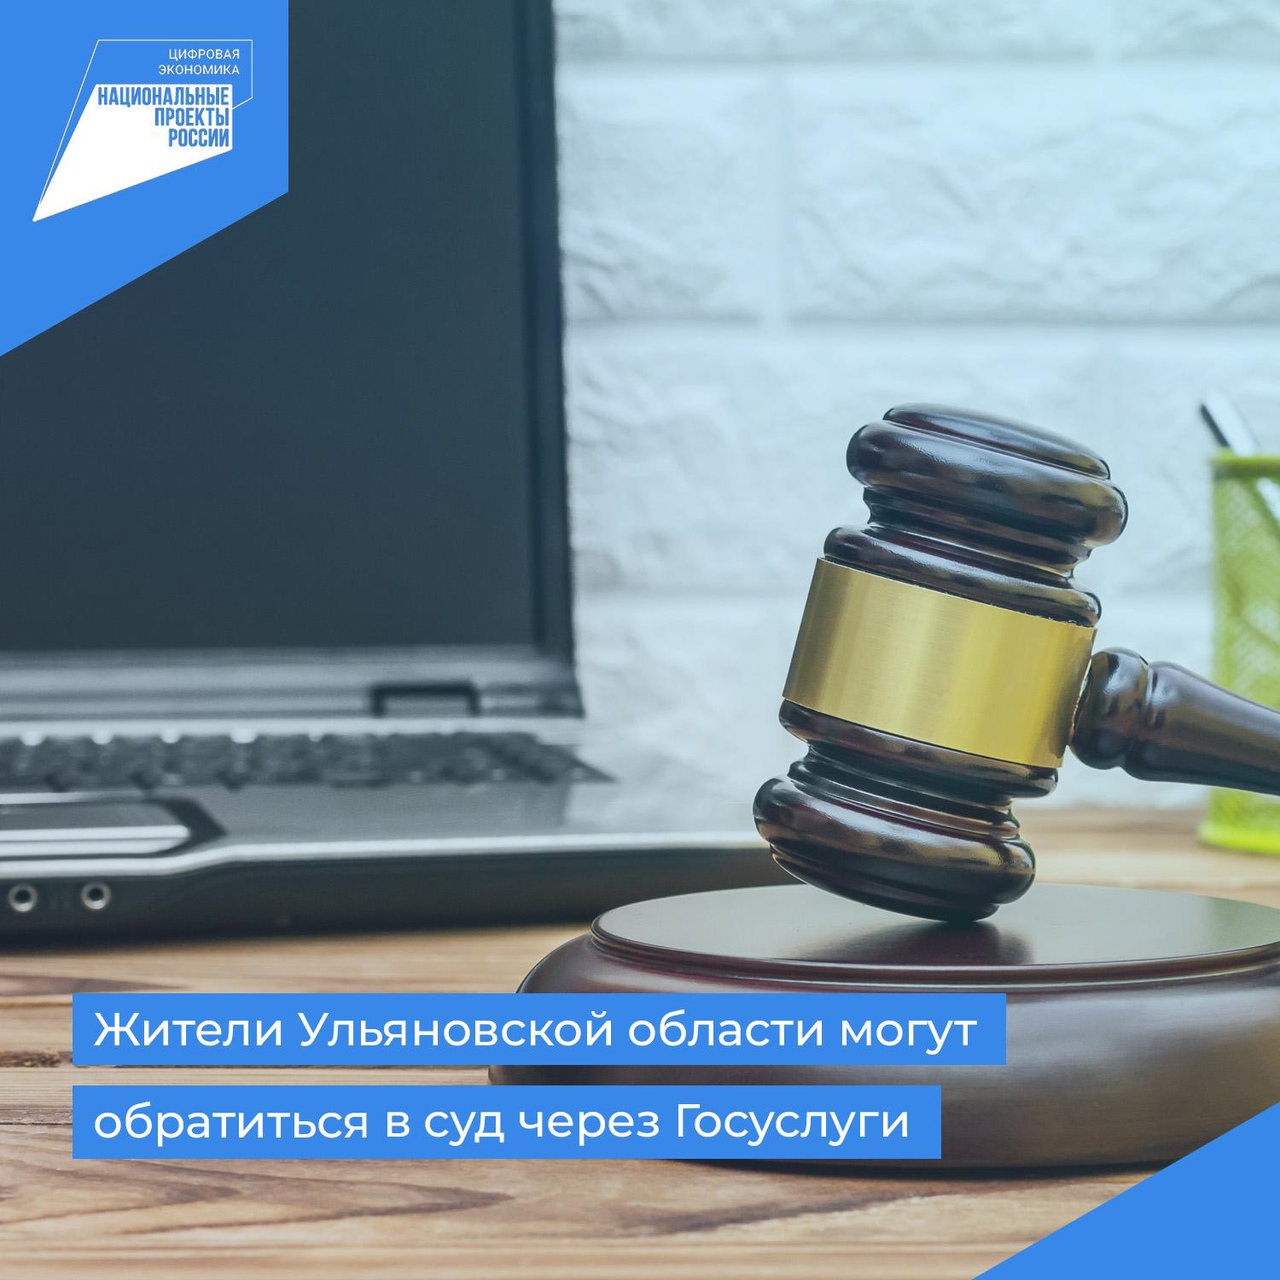 Жители Ульяновской области могут обратиться в суд через Госуслуги.